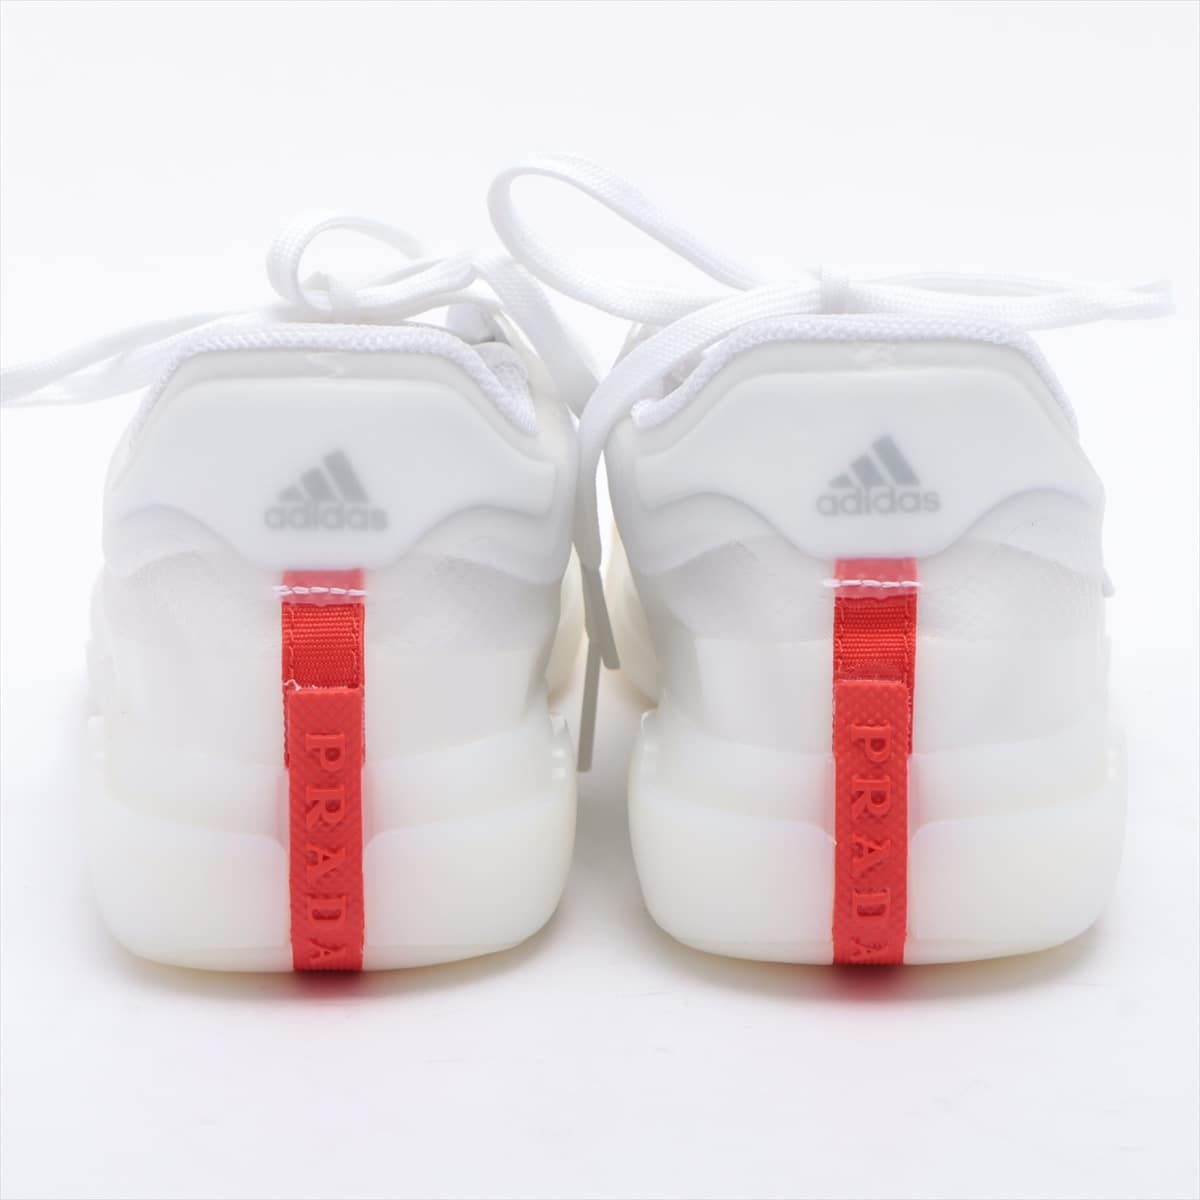 Prada x Adidas Fabric Sneakers 26.0cm Men's White LUNA ROSSA